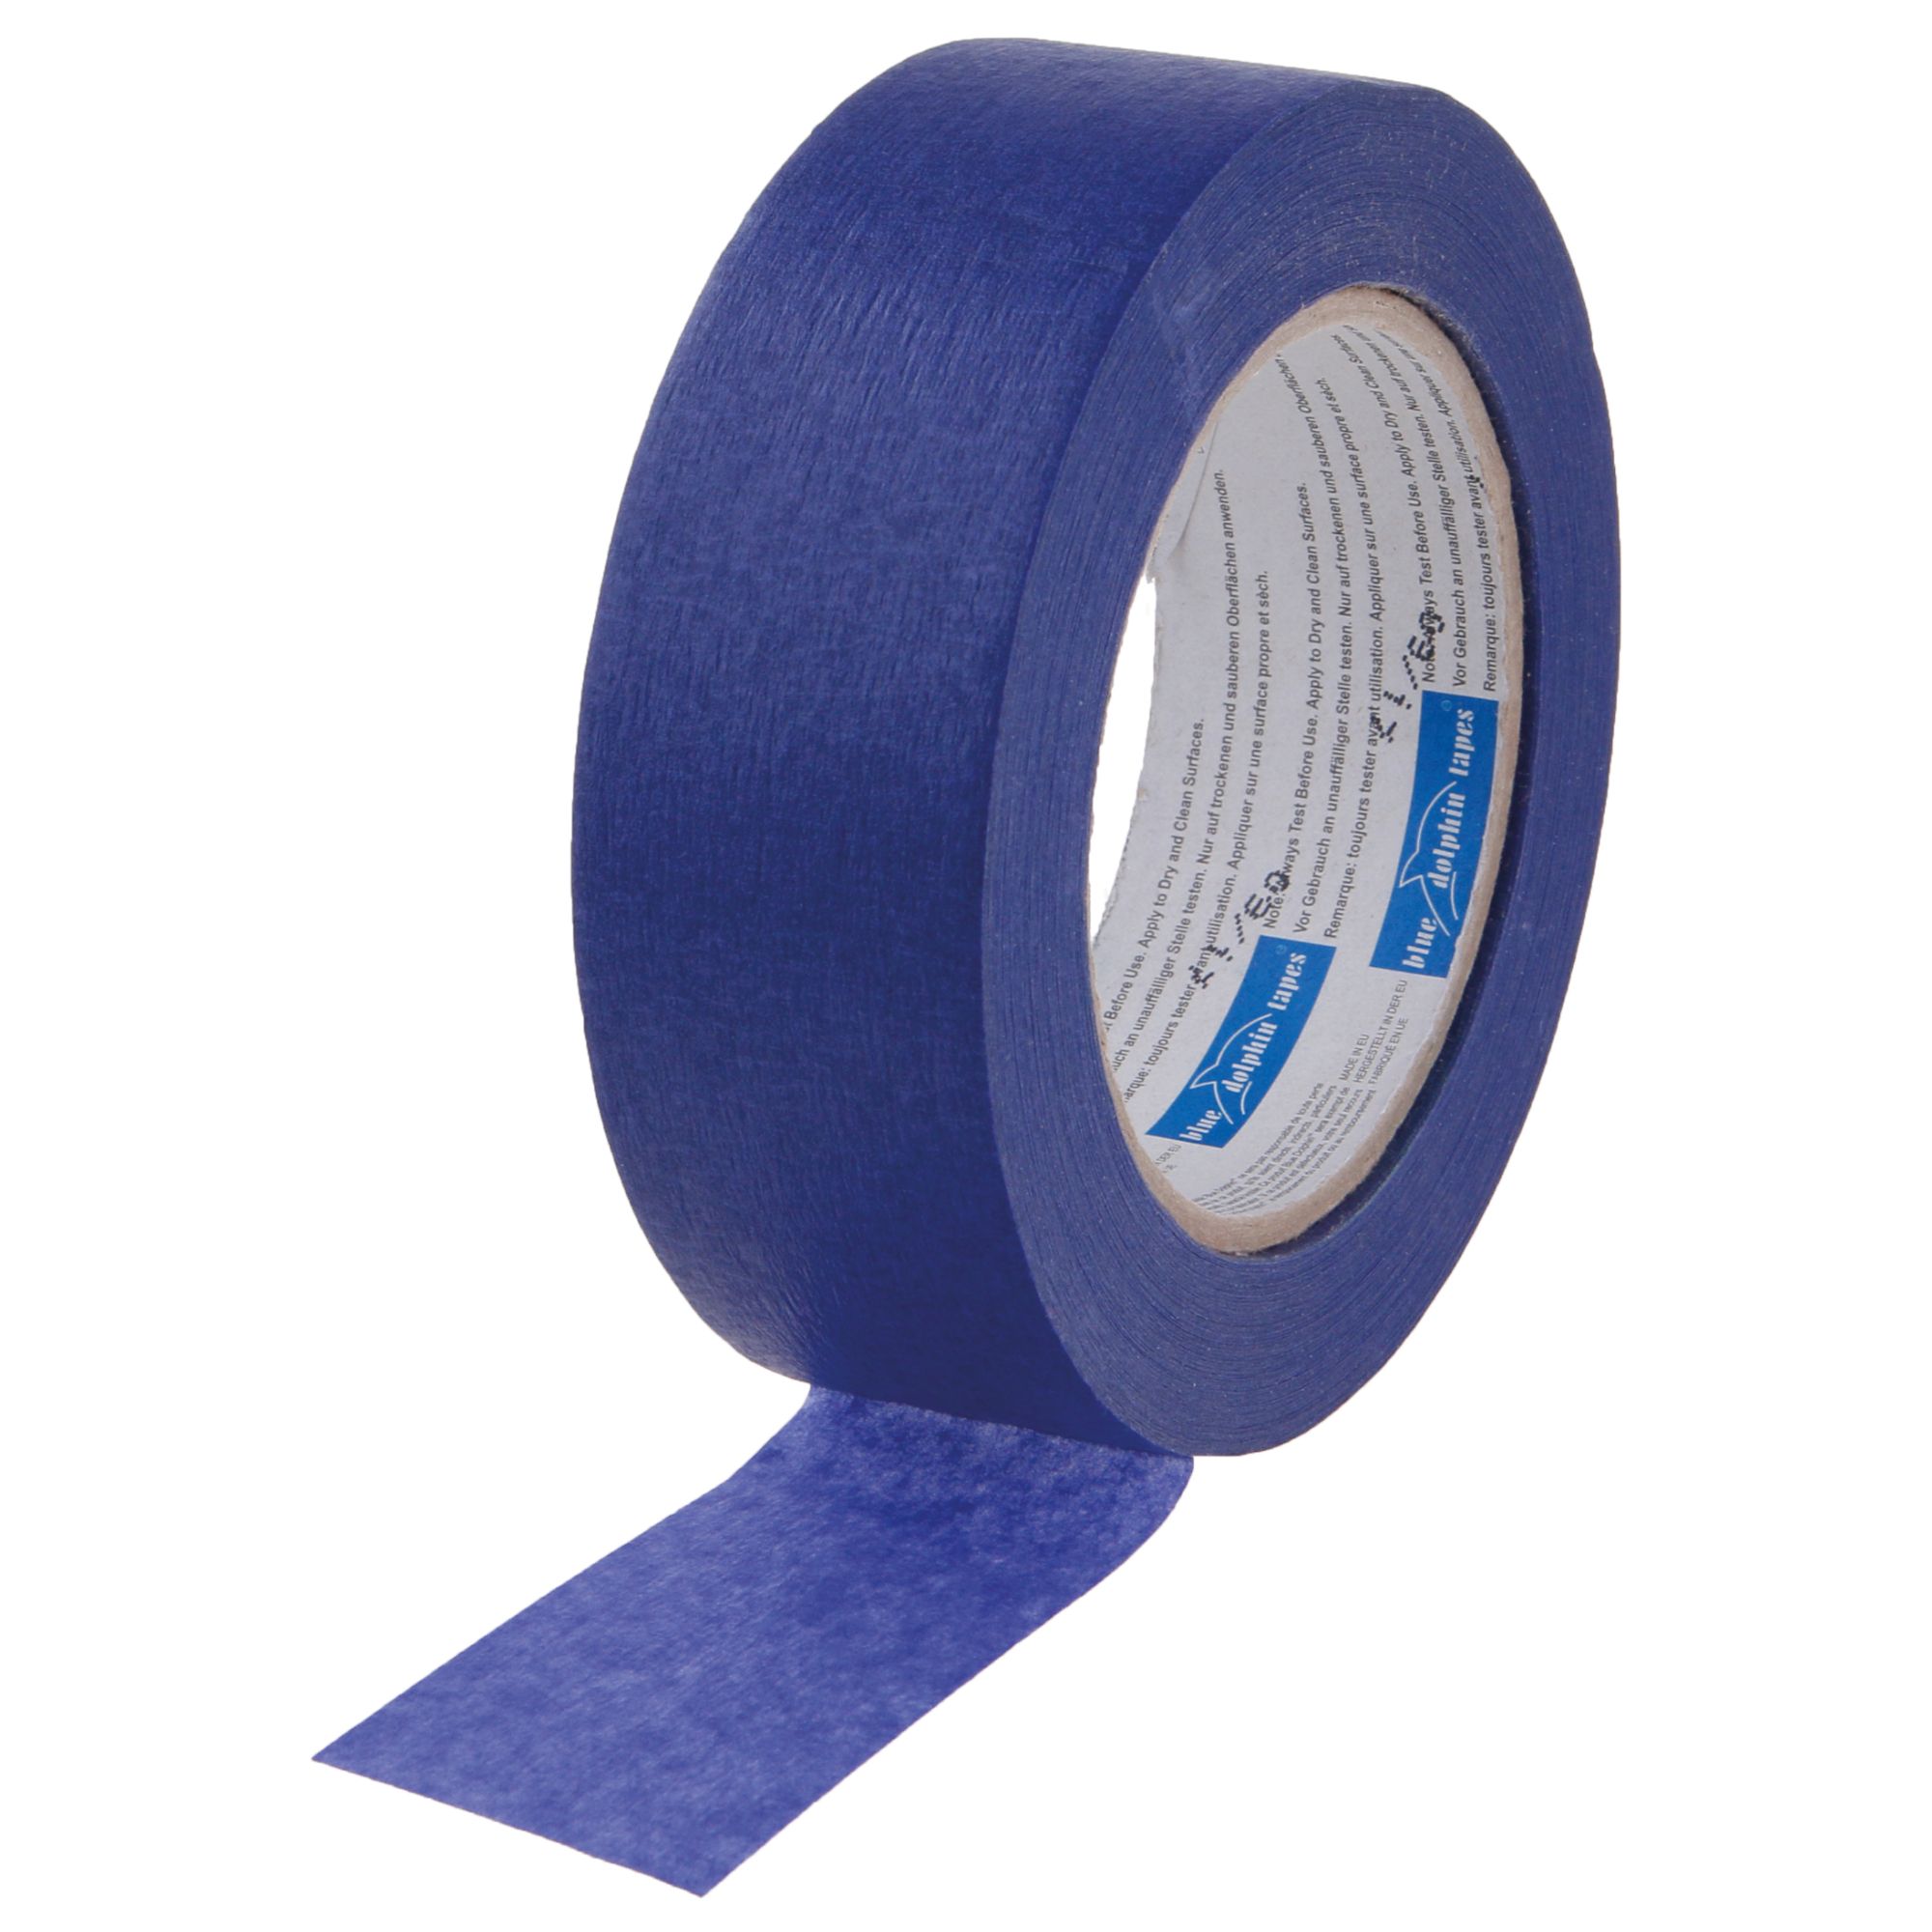 Páska papírová PROFI, 38mm x 50m, UV-14dní, BLUE DOLPHIN BLUE DOLPHIN TAPES 37263 0.22 Kg ŽELEZÁŽŘSTVÍ Sklad4 KB- 37263